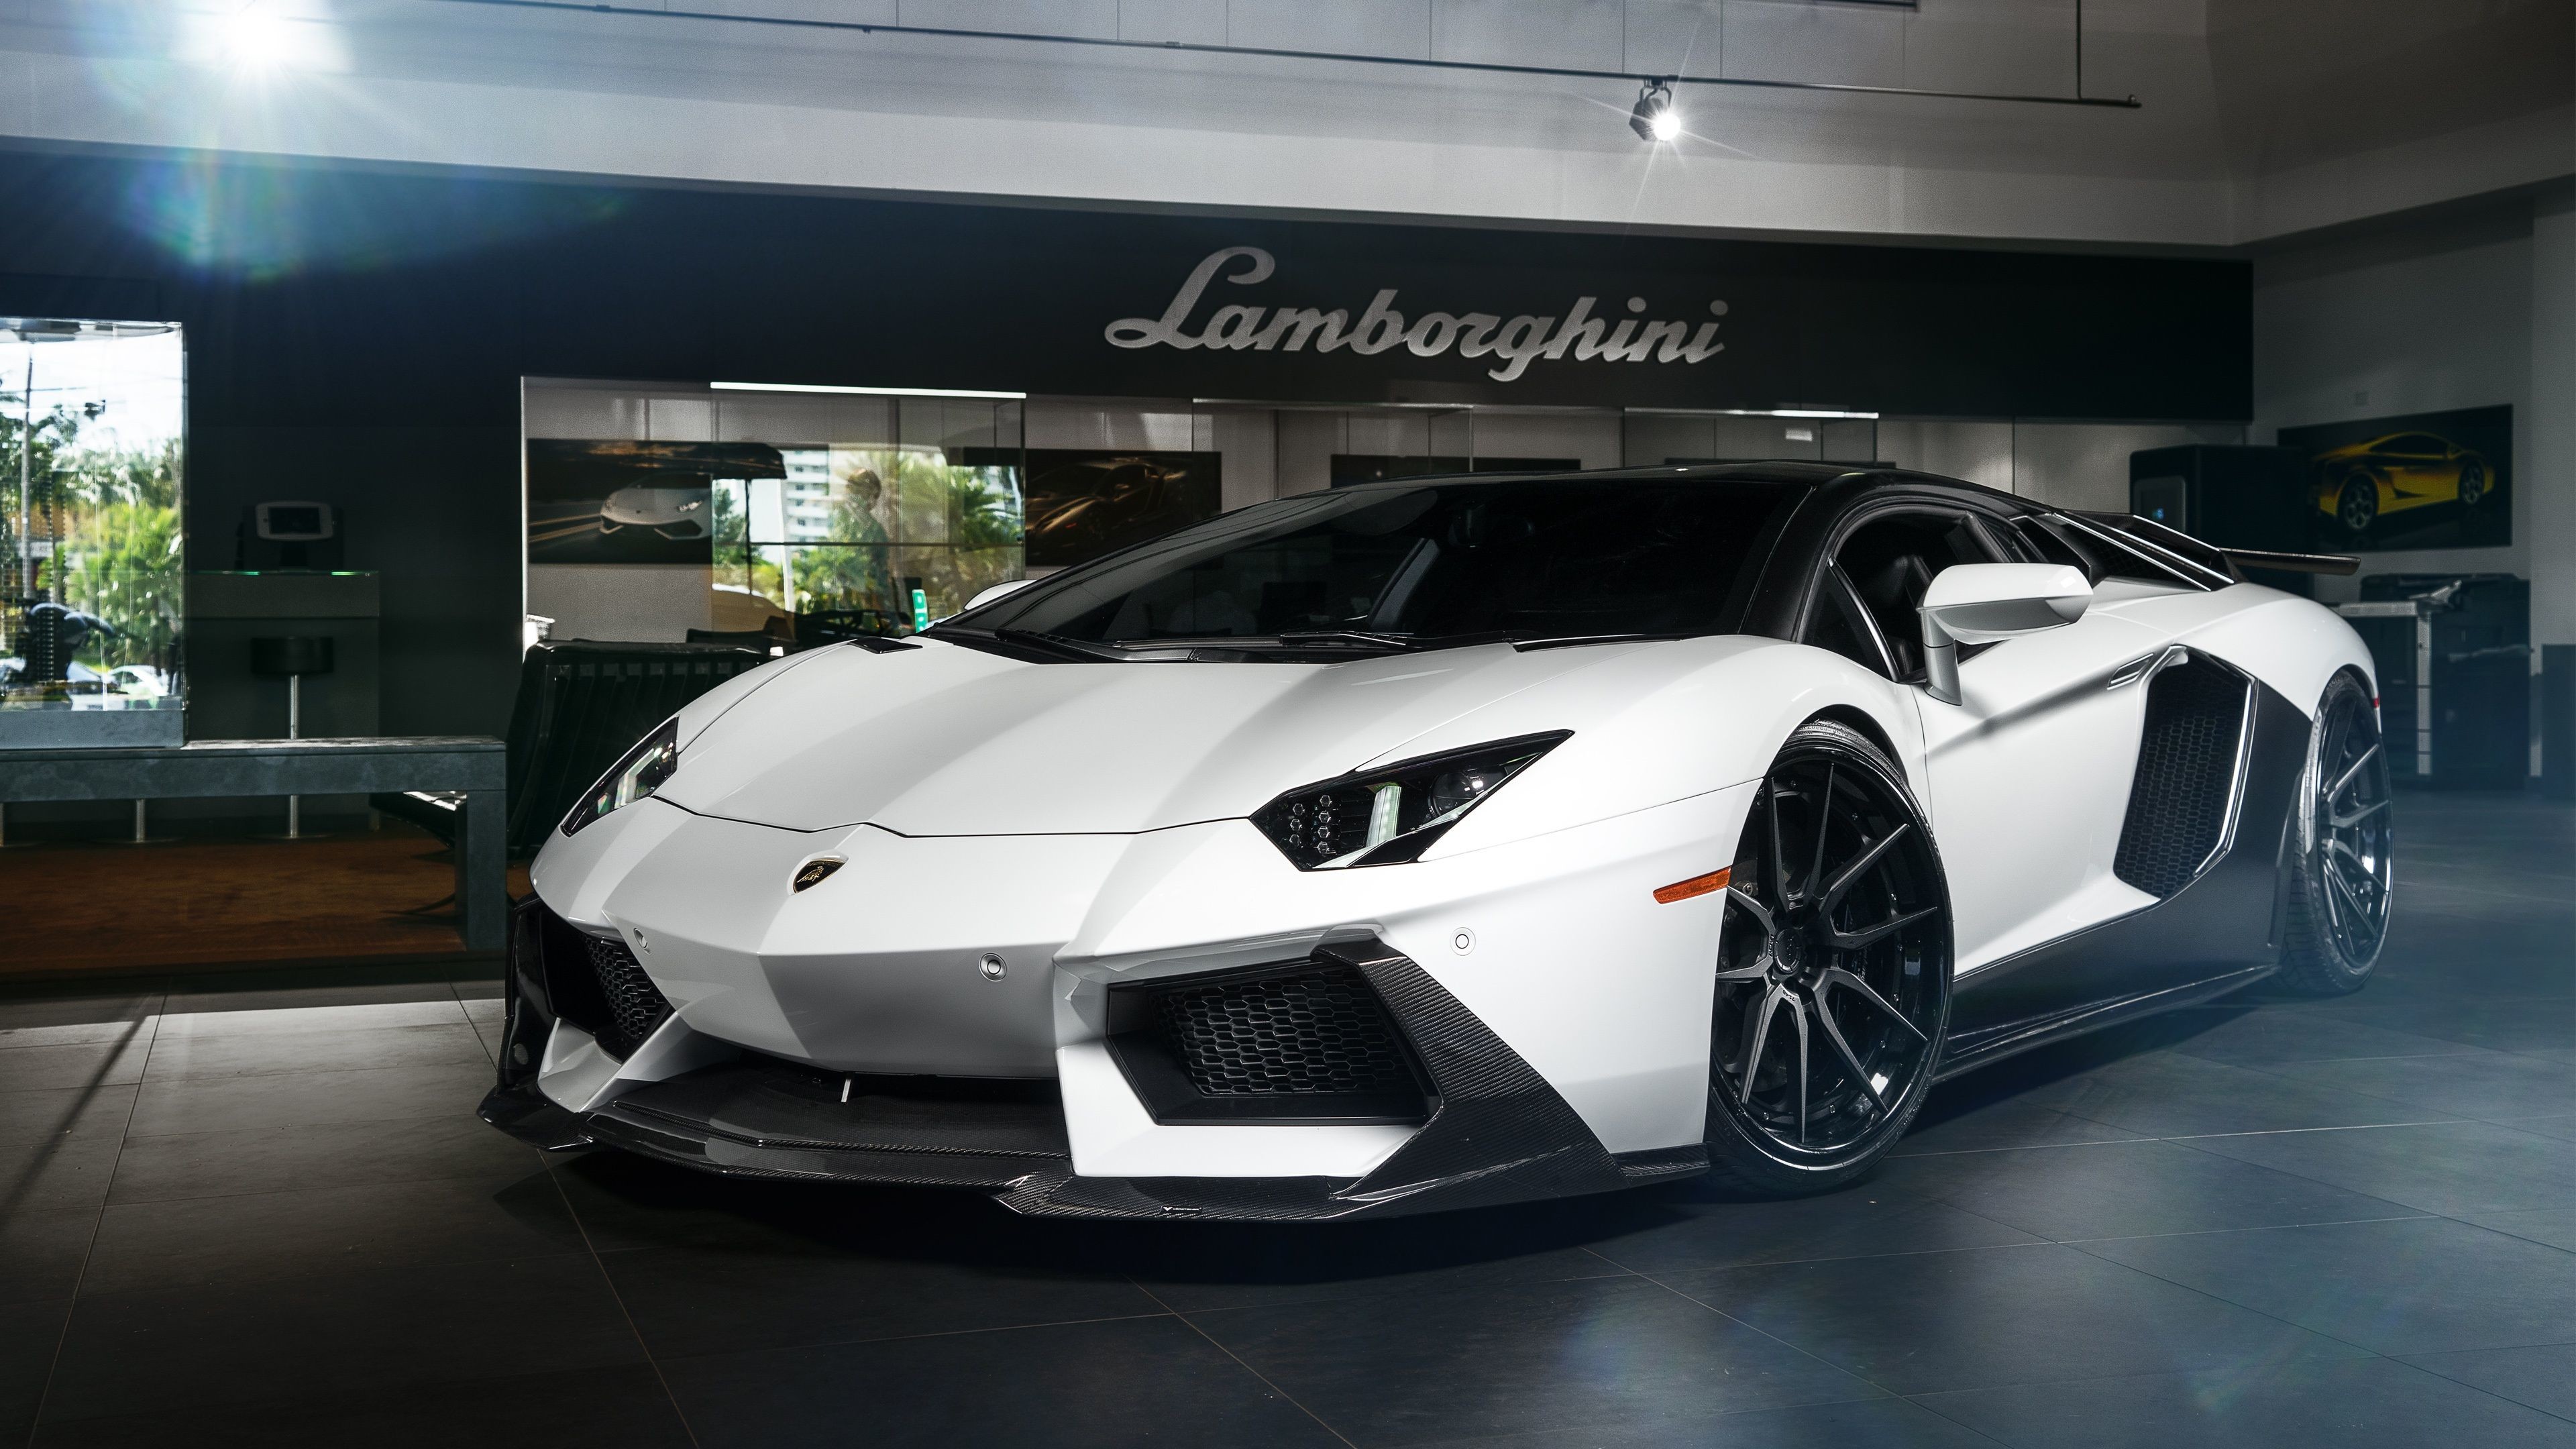 Lamborghini High Resolution Wallpaper background picture